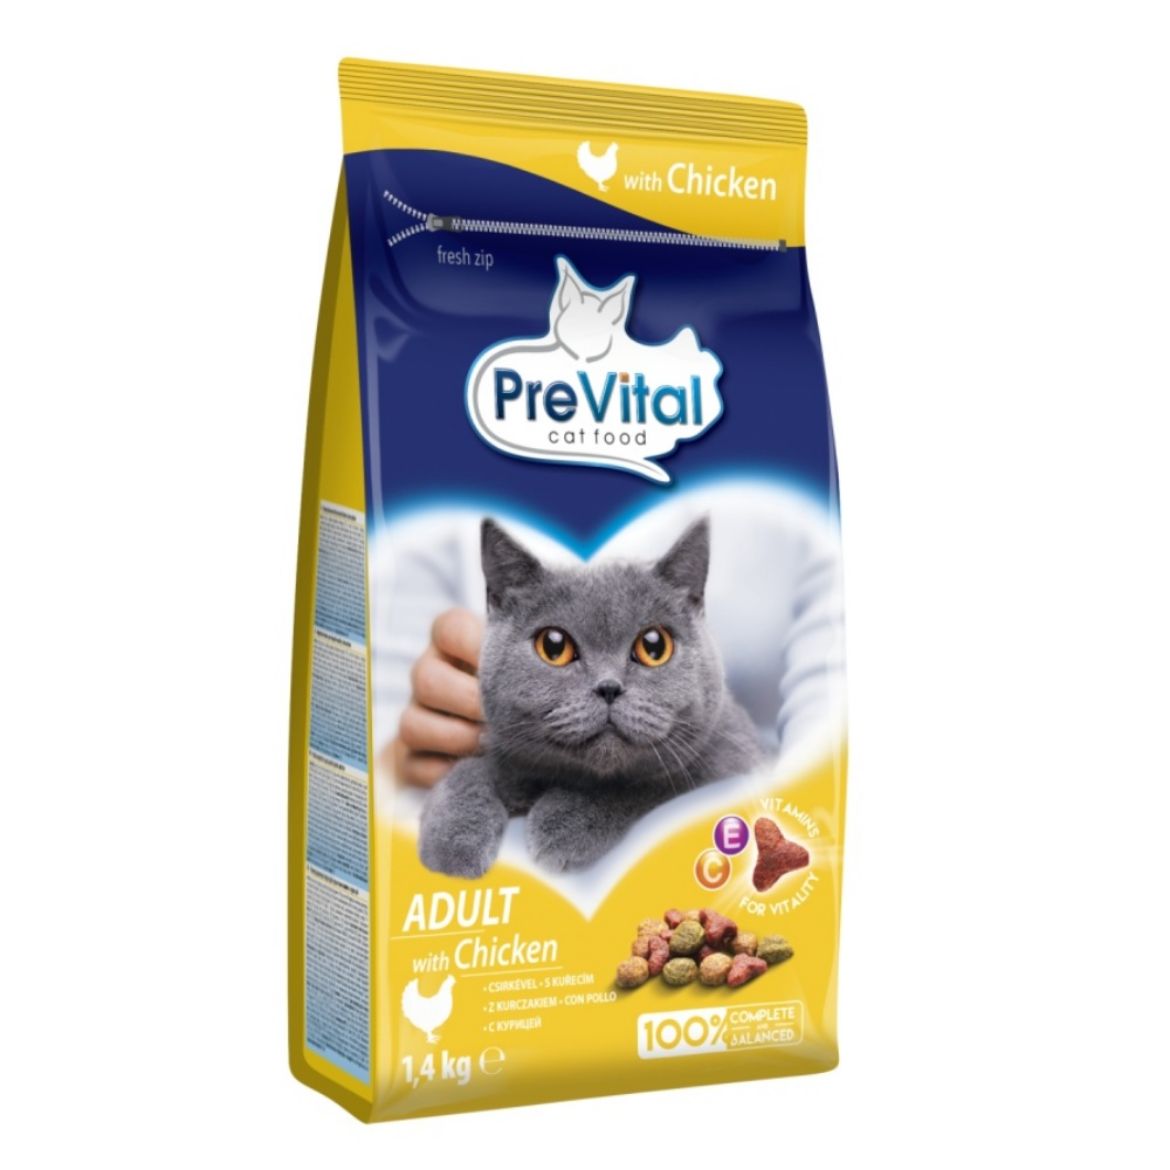 Obrázek z PreVital kočka kuřecí 1,4 kg 